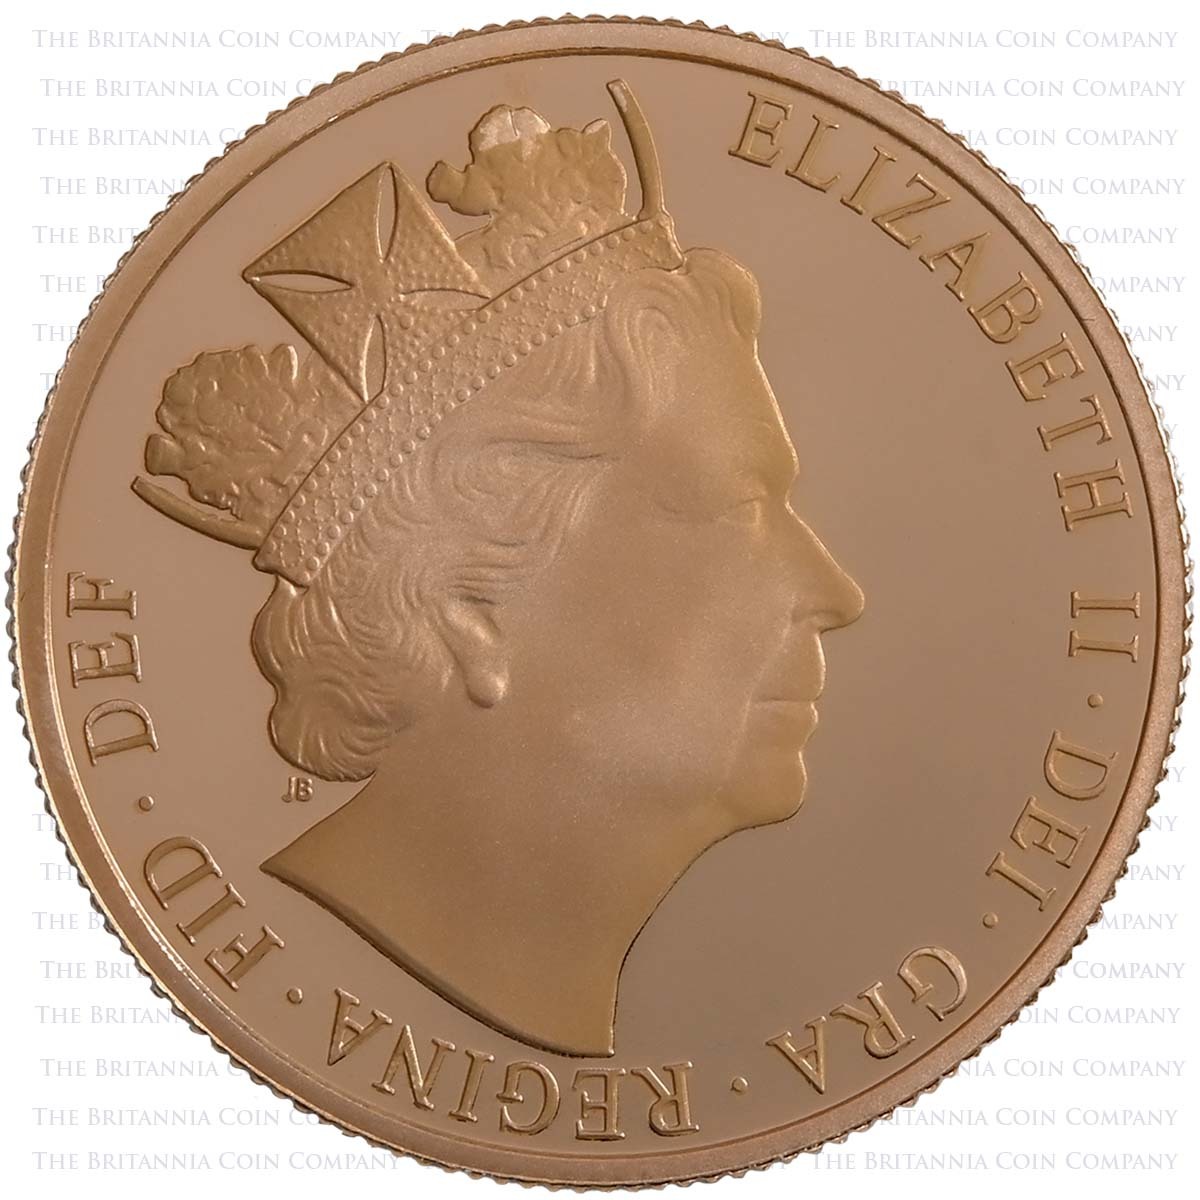 SV316 2016 Elizabeth II 3 Coin Premium Gold Proof Sovereign Set James Butler Portrait Obverse